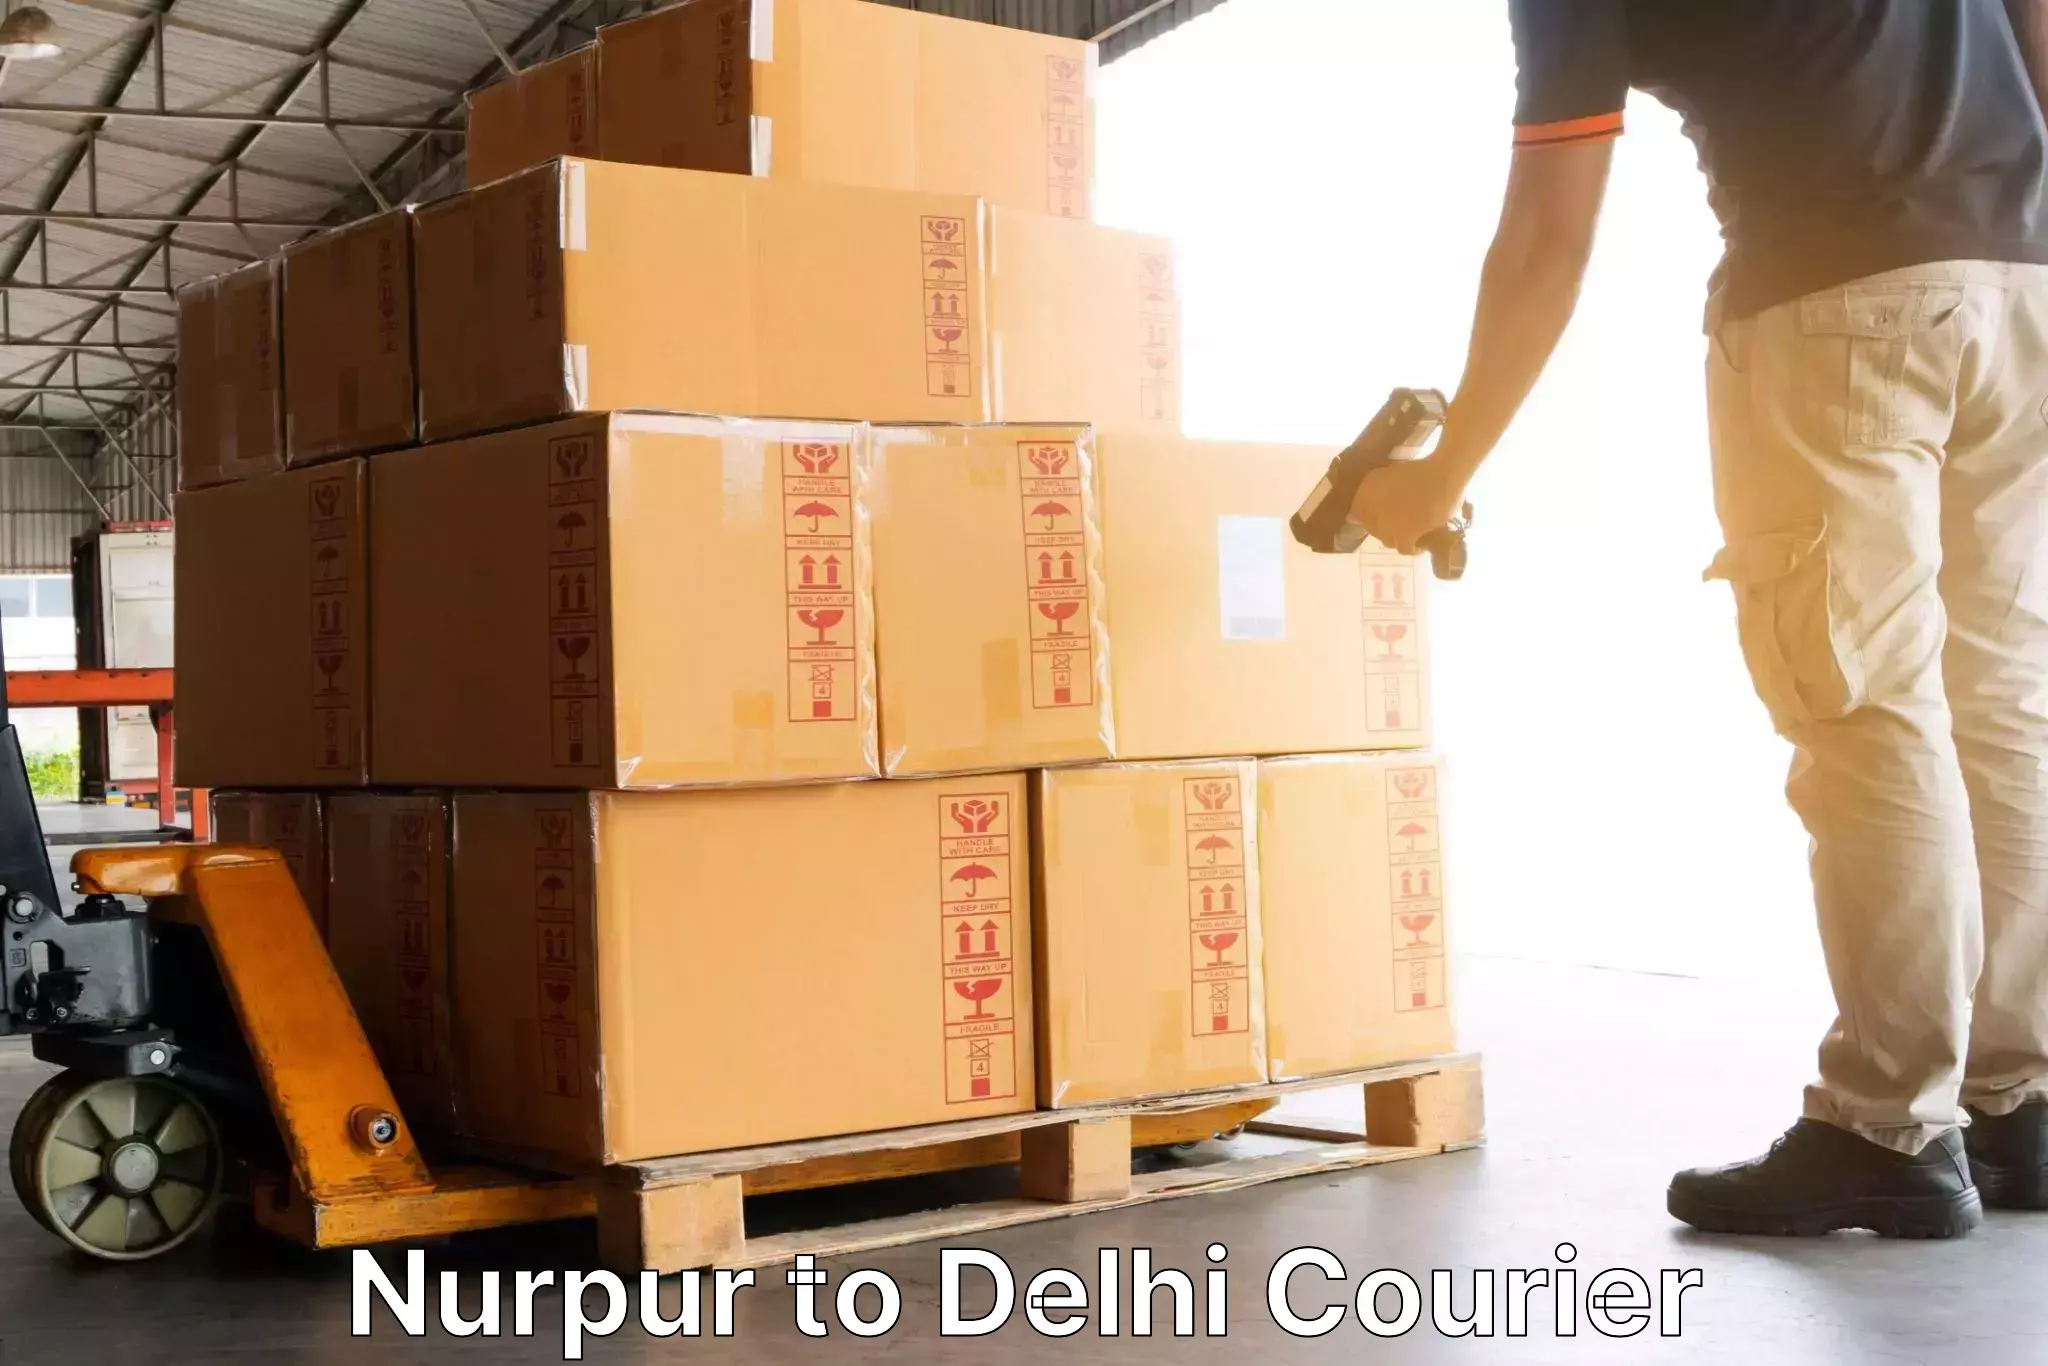 Efficient freight service Nurpur to Jawaharlal Nehru University New Delhi